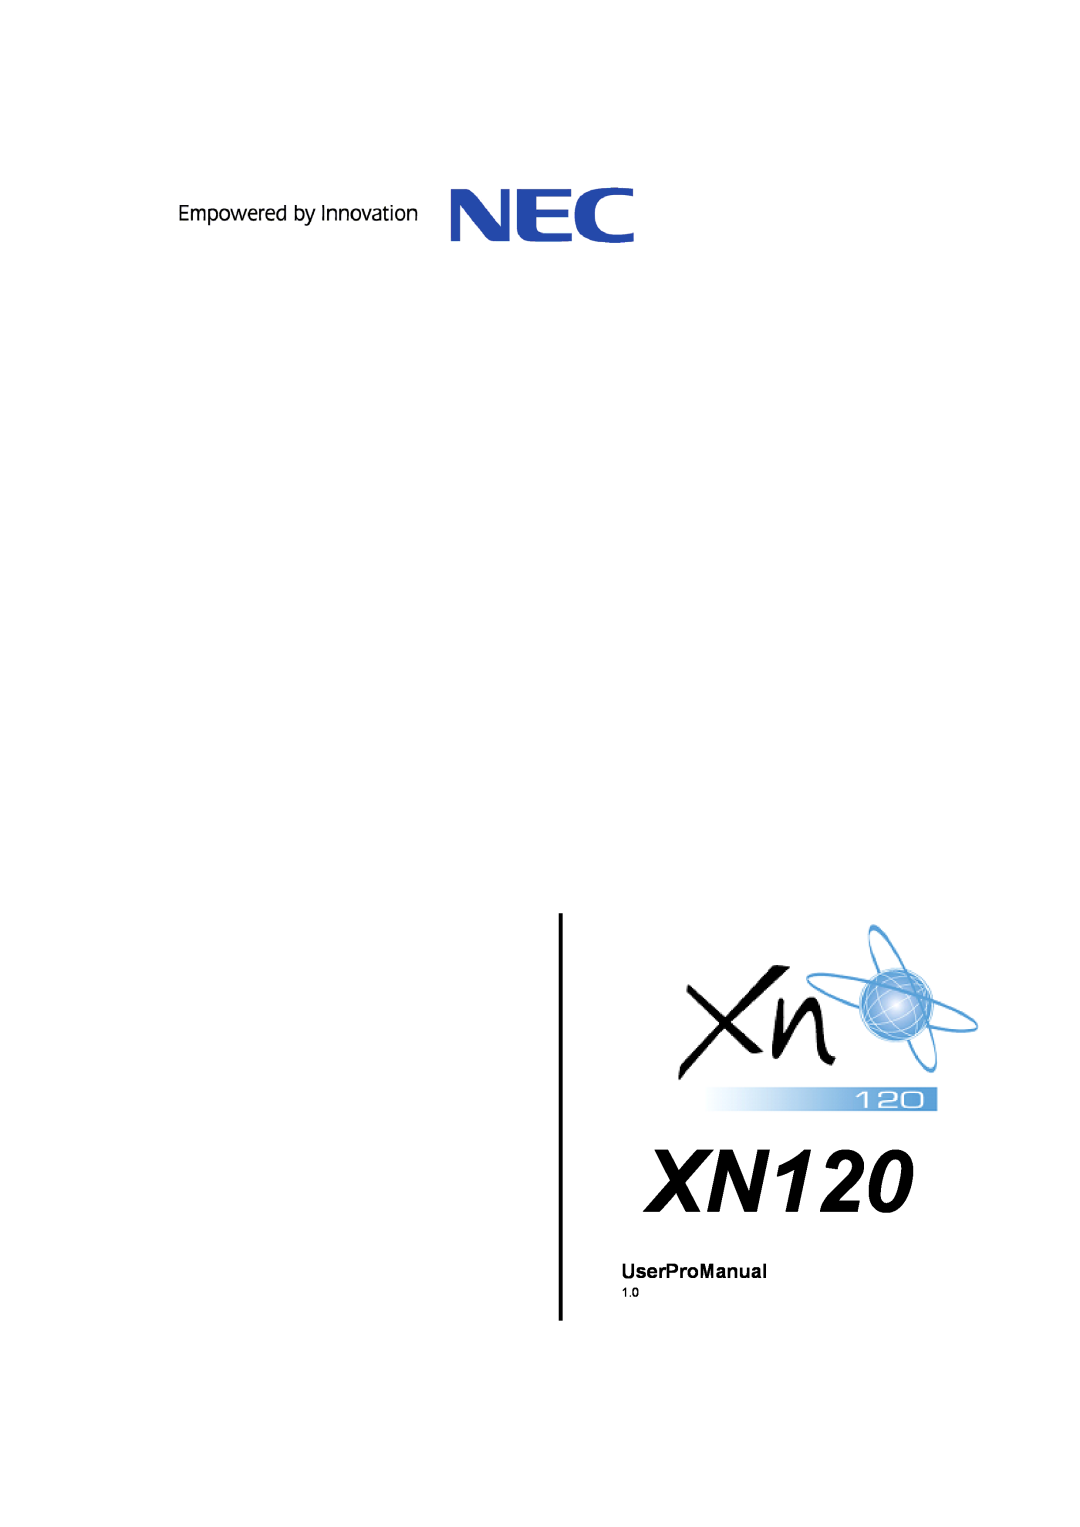 NEC XN120 manual UserProManual 